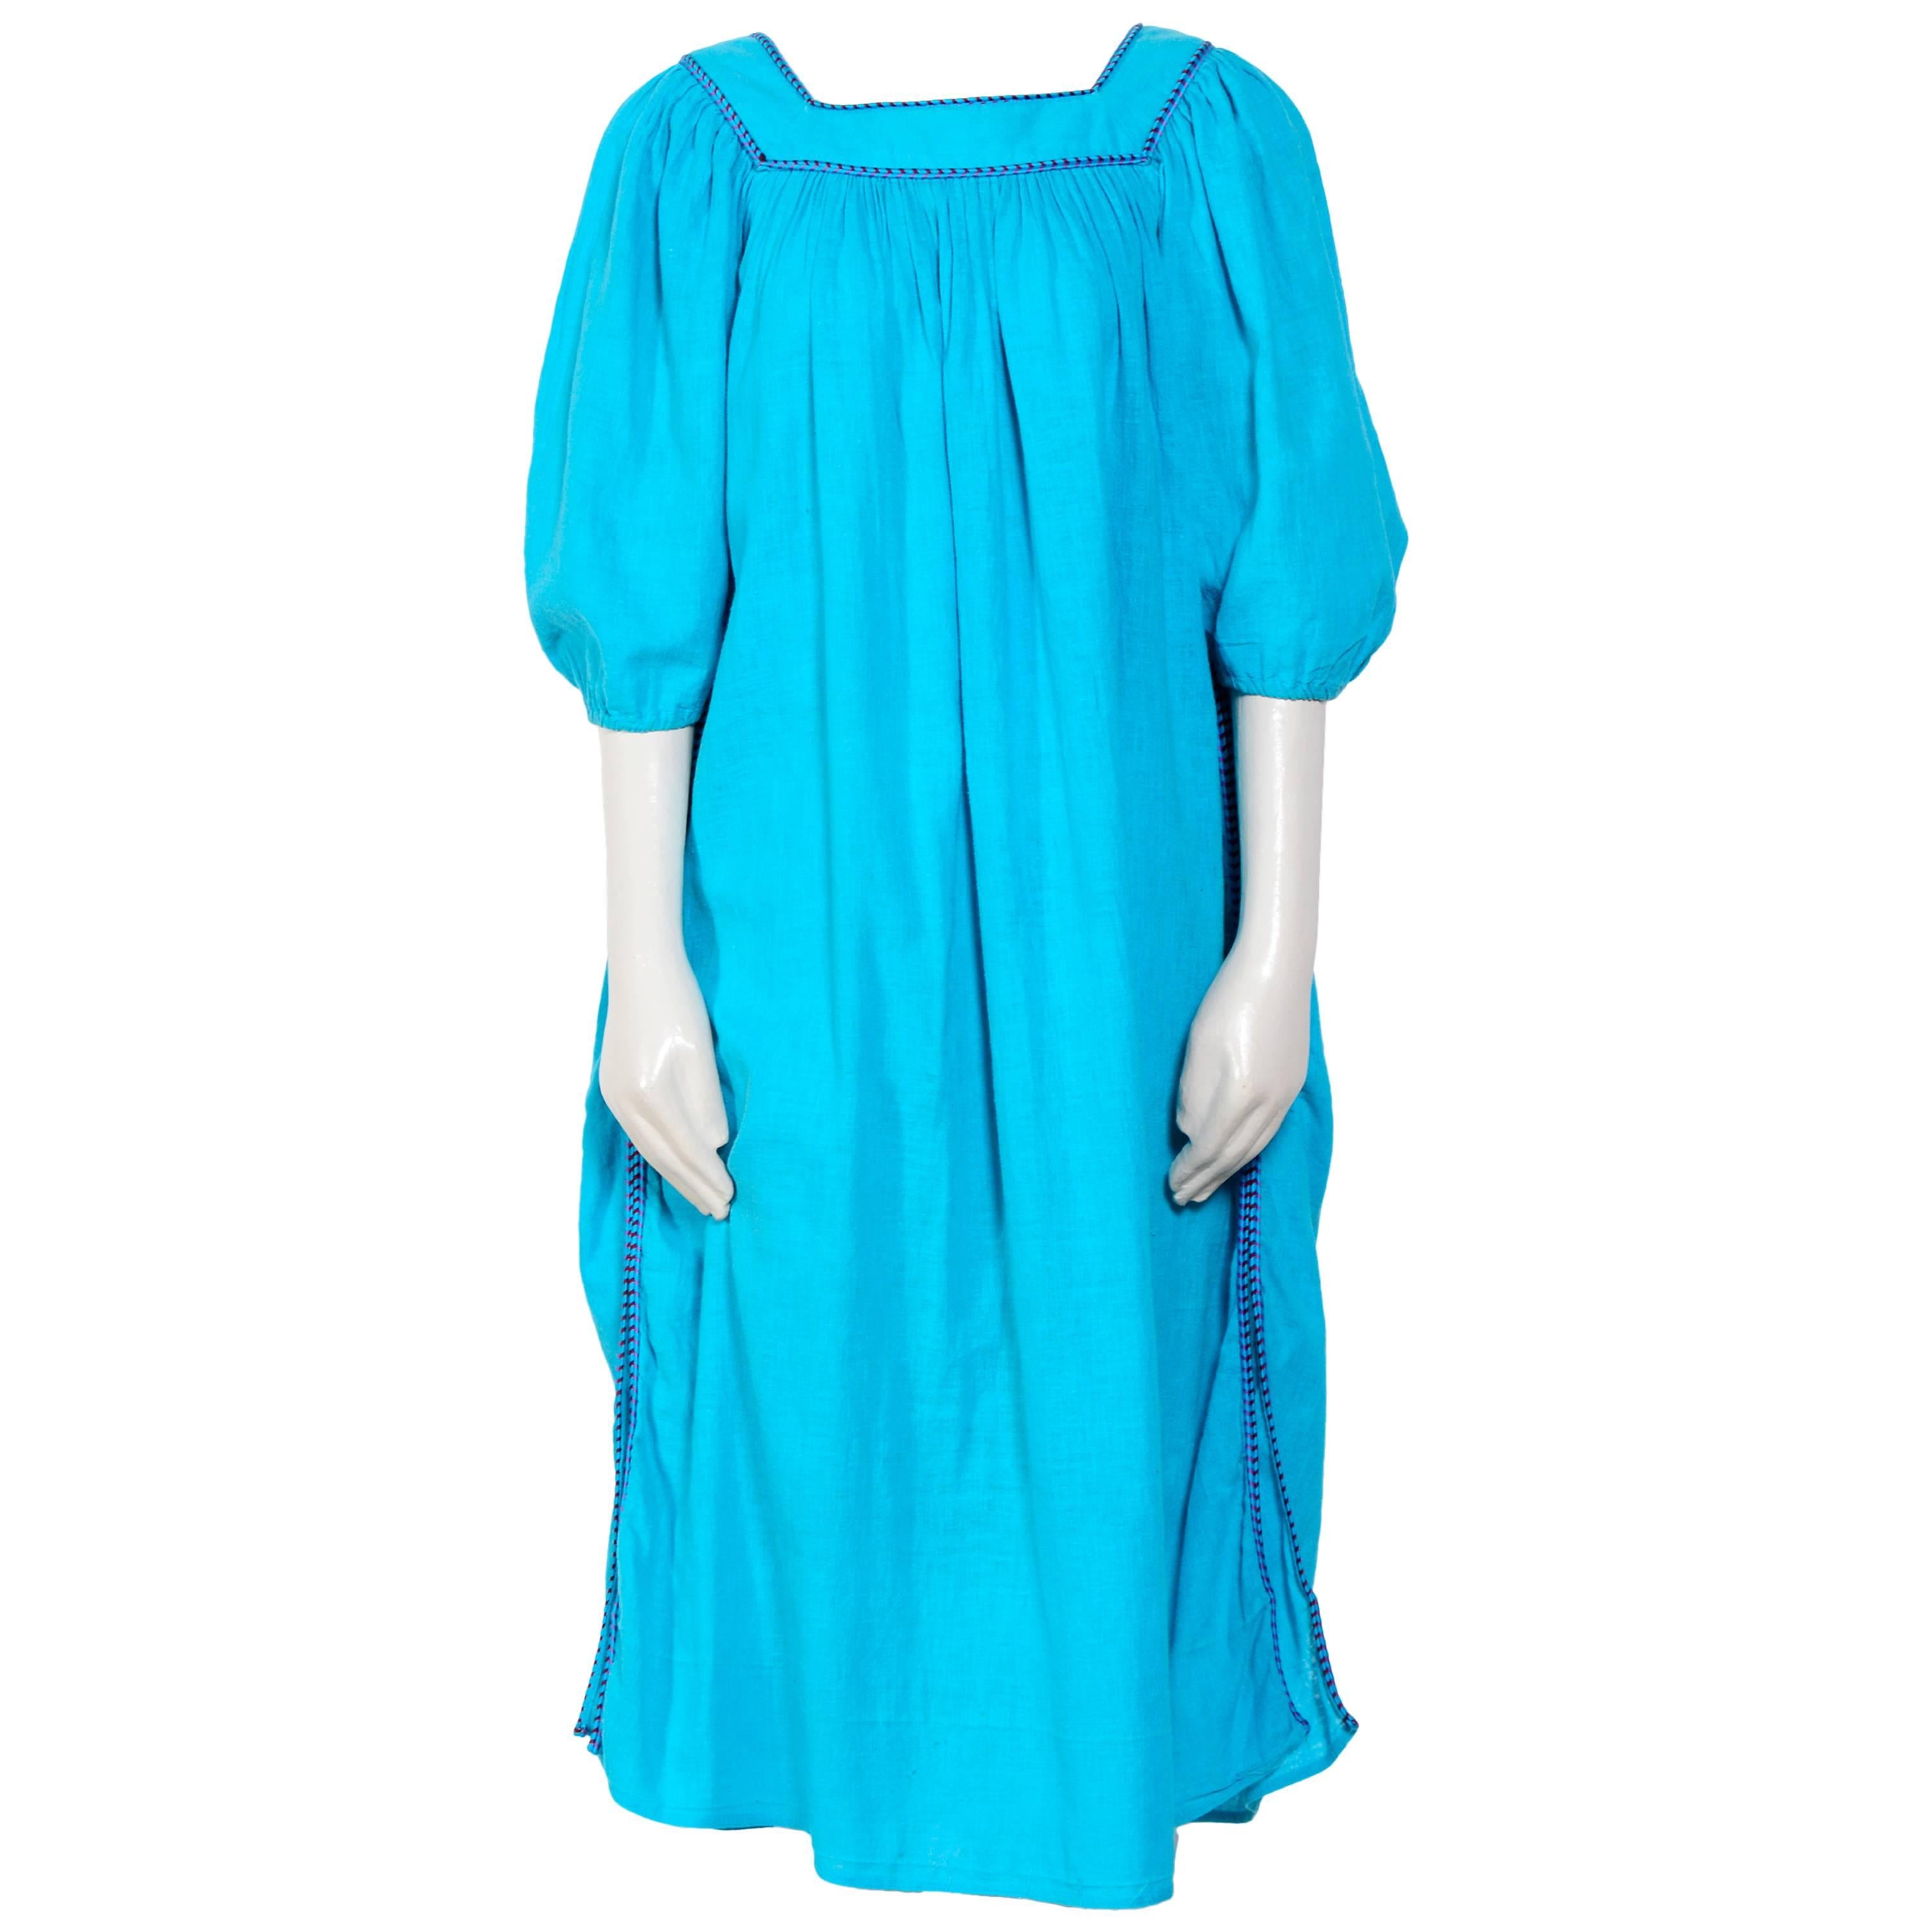 Yves St Laurent 70's "Jardin des Majorelles" Inspired Cotton Summer Dress